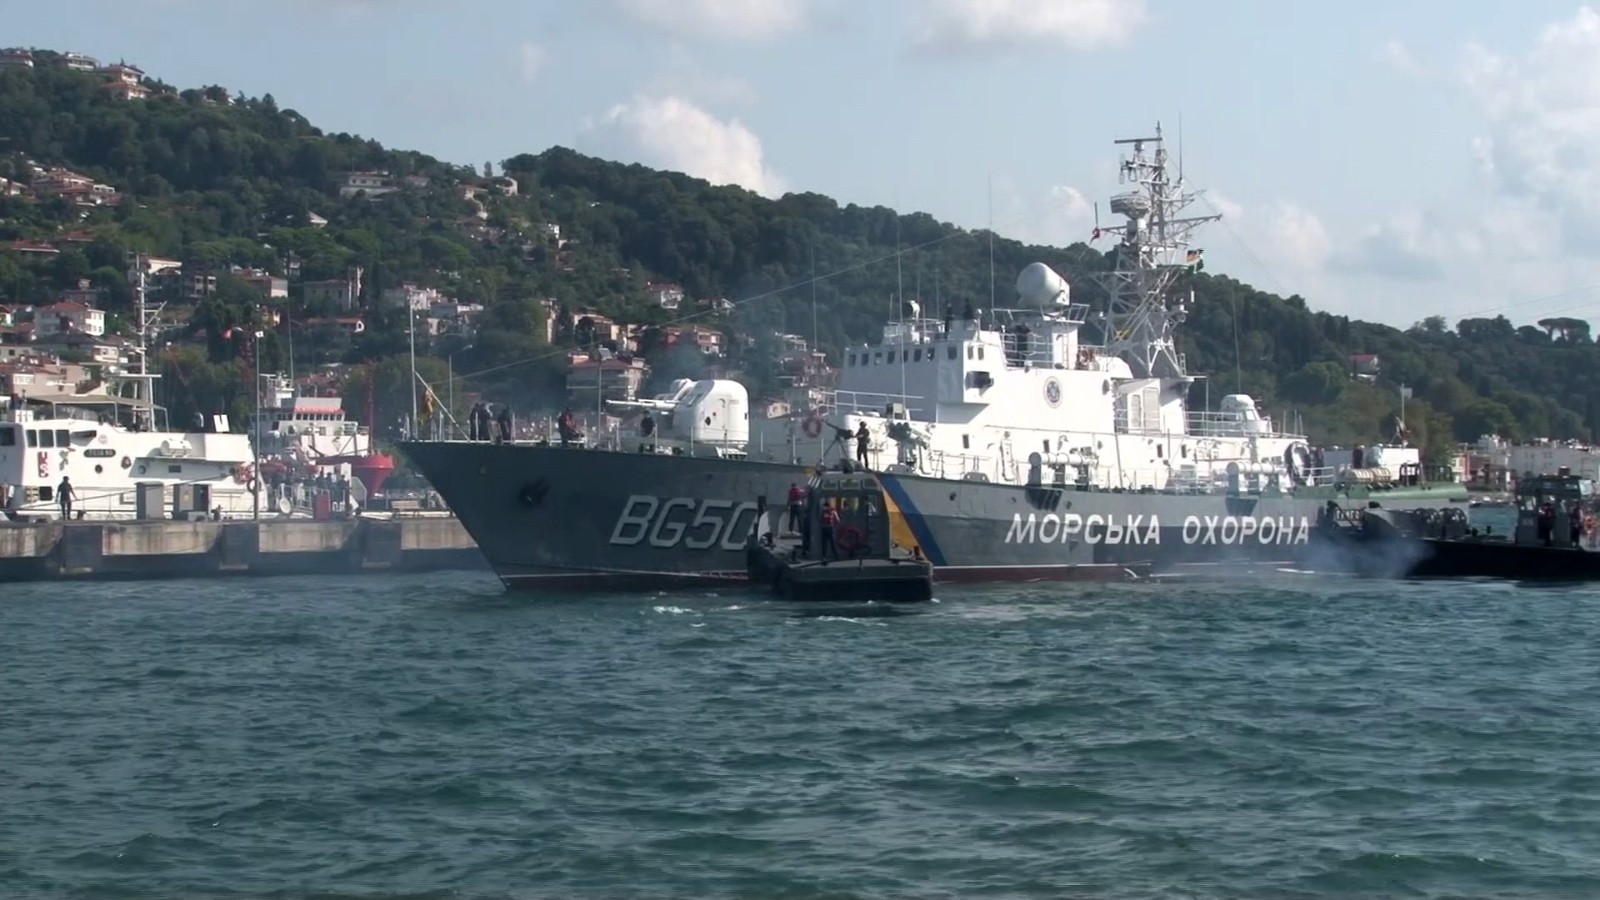 Ukrayna’nın Grigoriy Kuropyatnikov gemisinden Türkiye’ye ilk dostluk ziyareti